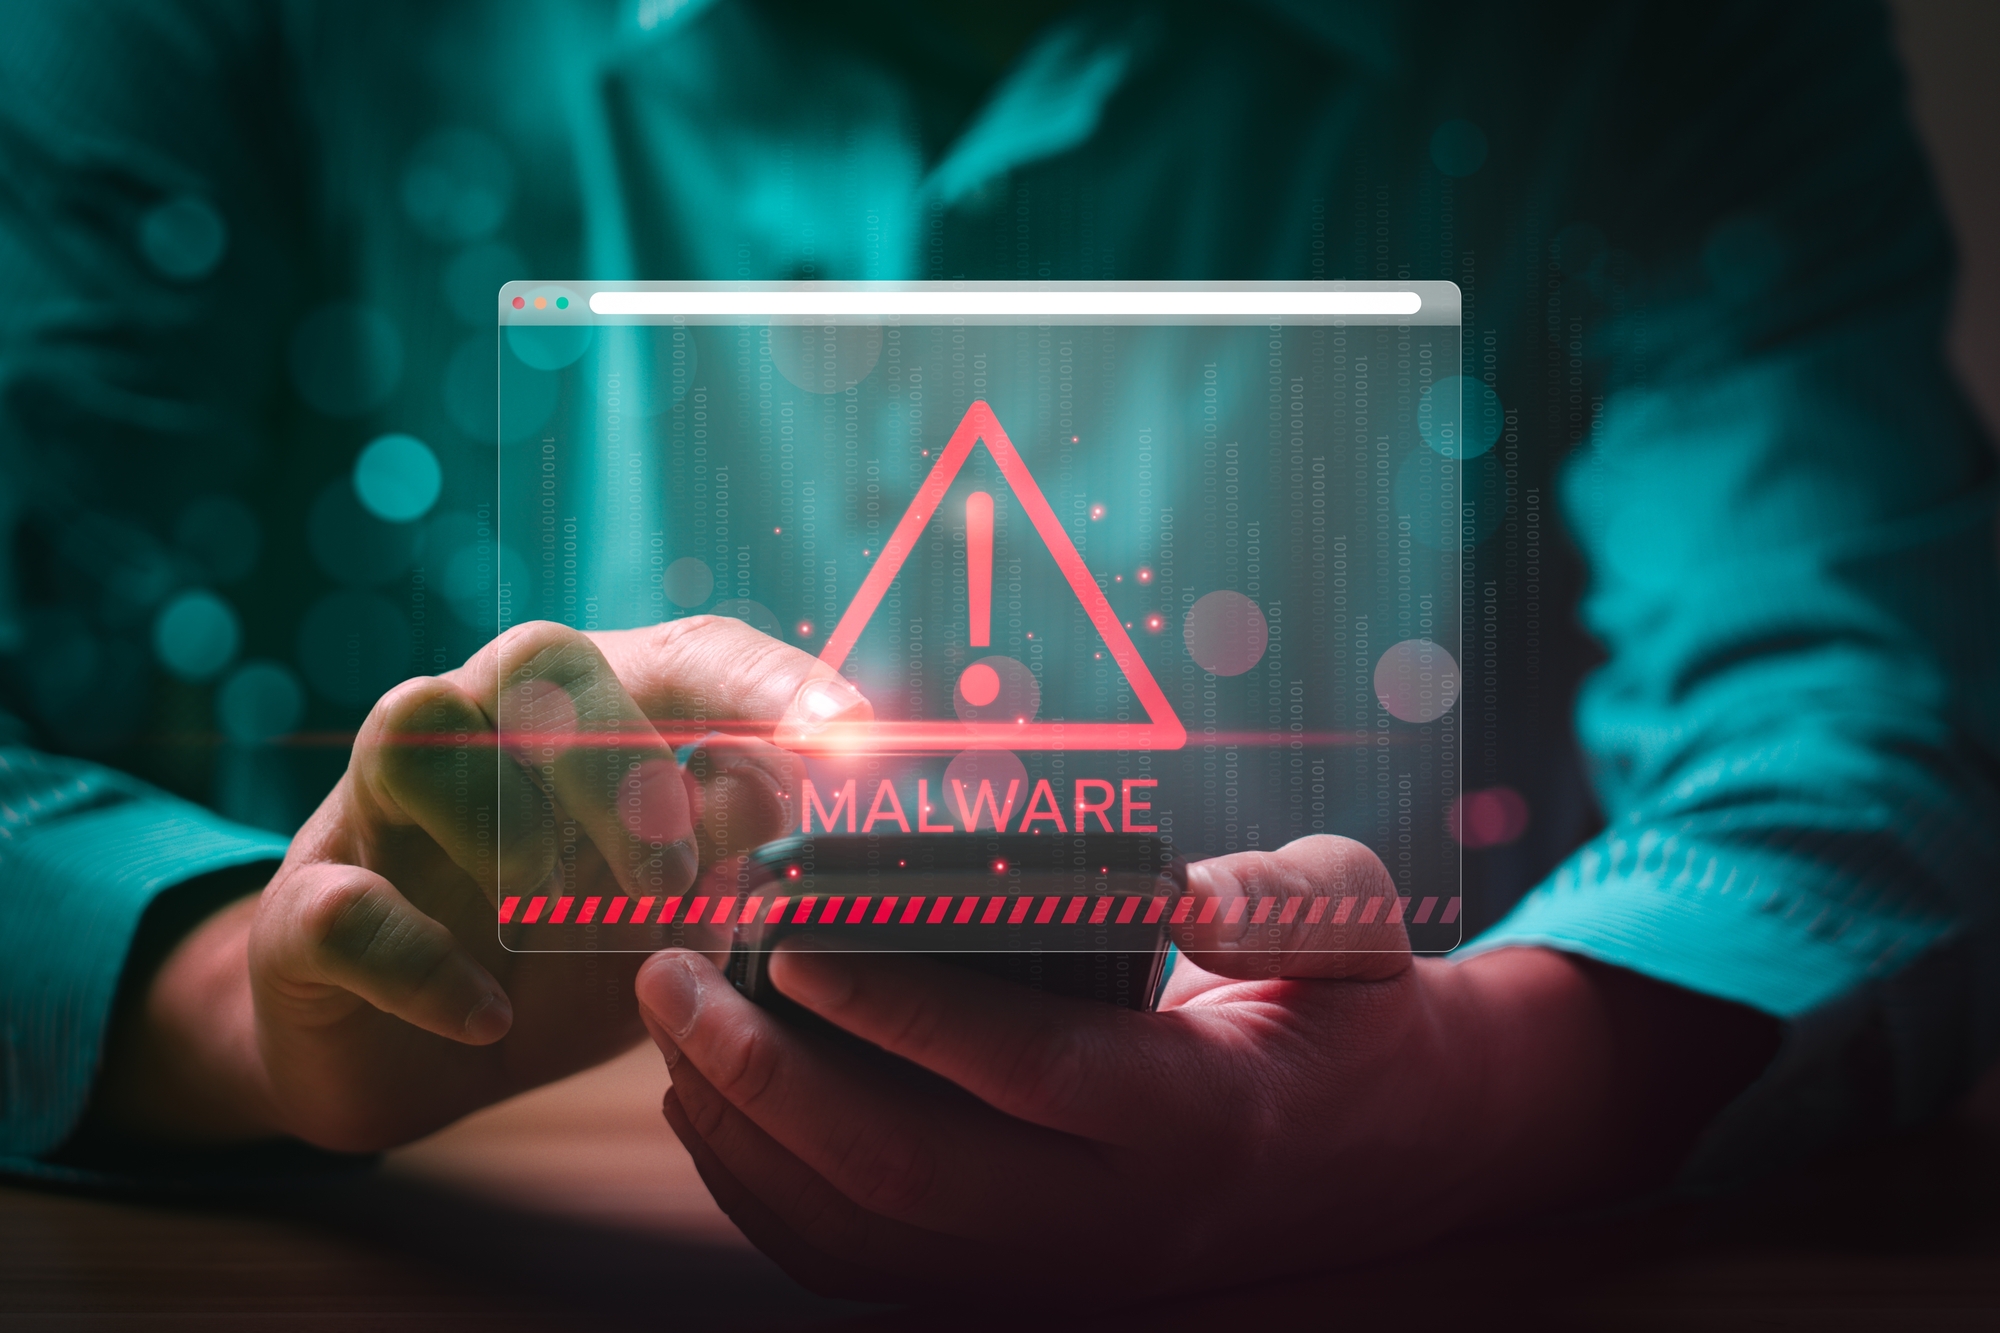 Des ISO pirates de Windows circulent... avec un malware intégré